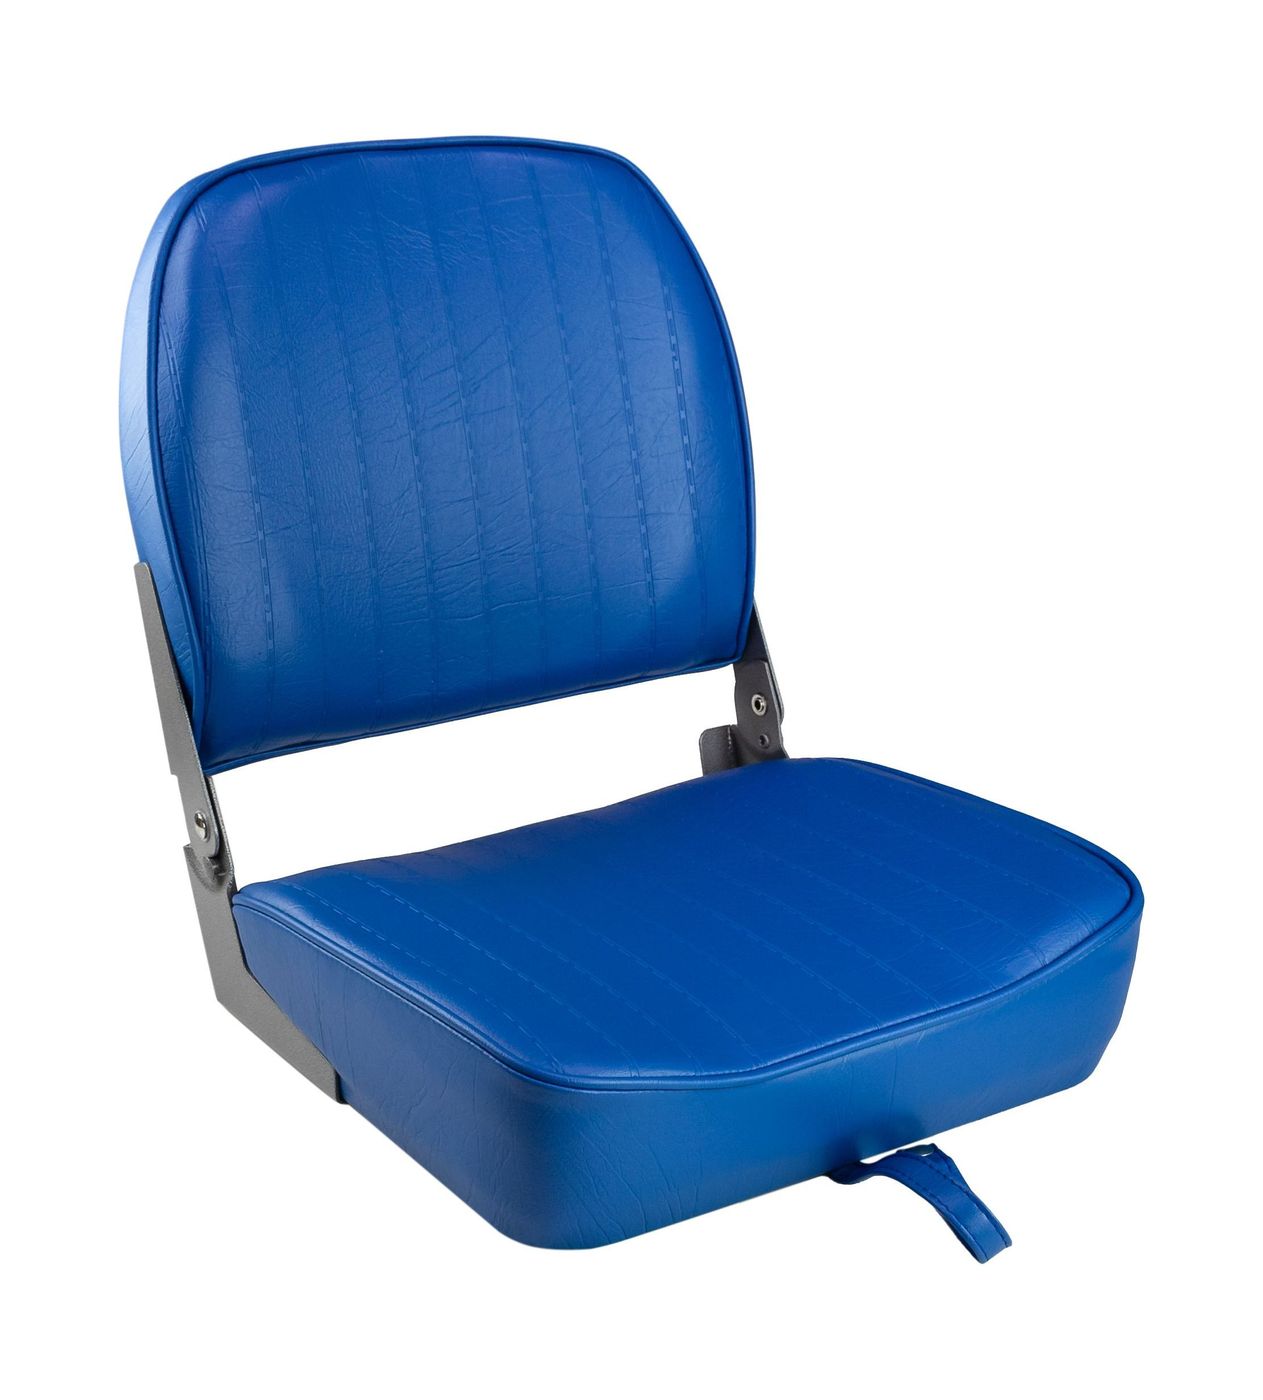 Кресло складное мягкое ECONOMY с низкой спинкой, цвет синий 1040621 кресло мягкое складное deluxe обивка винил белый синий marine rocket 75137wb mr